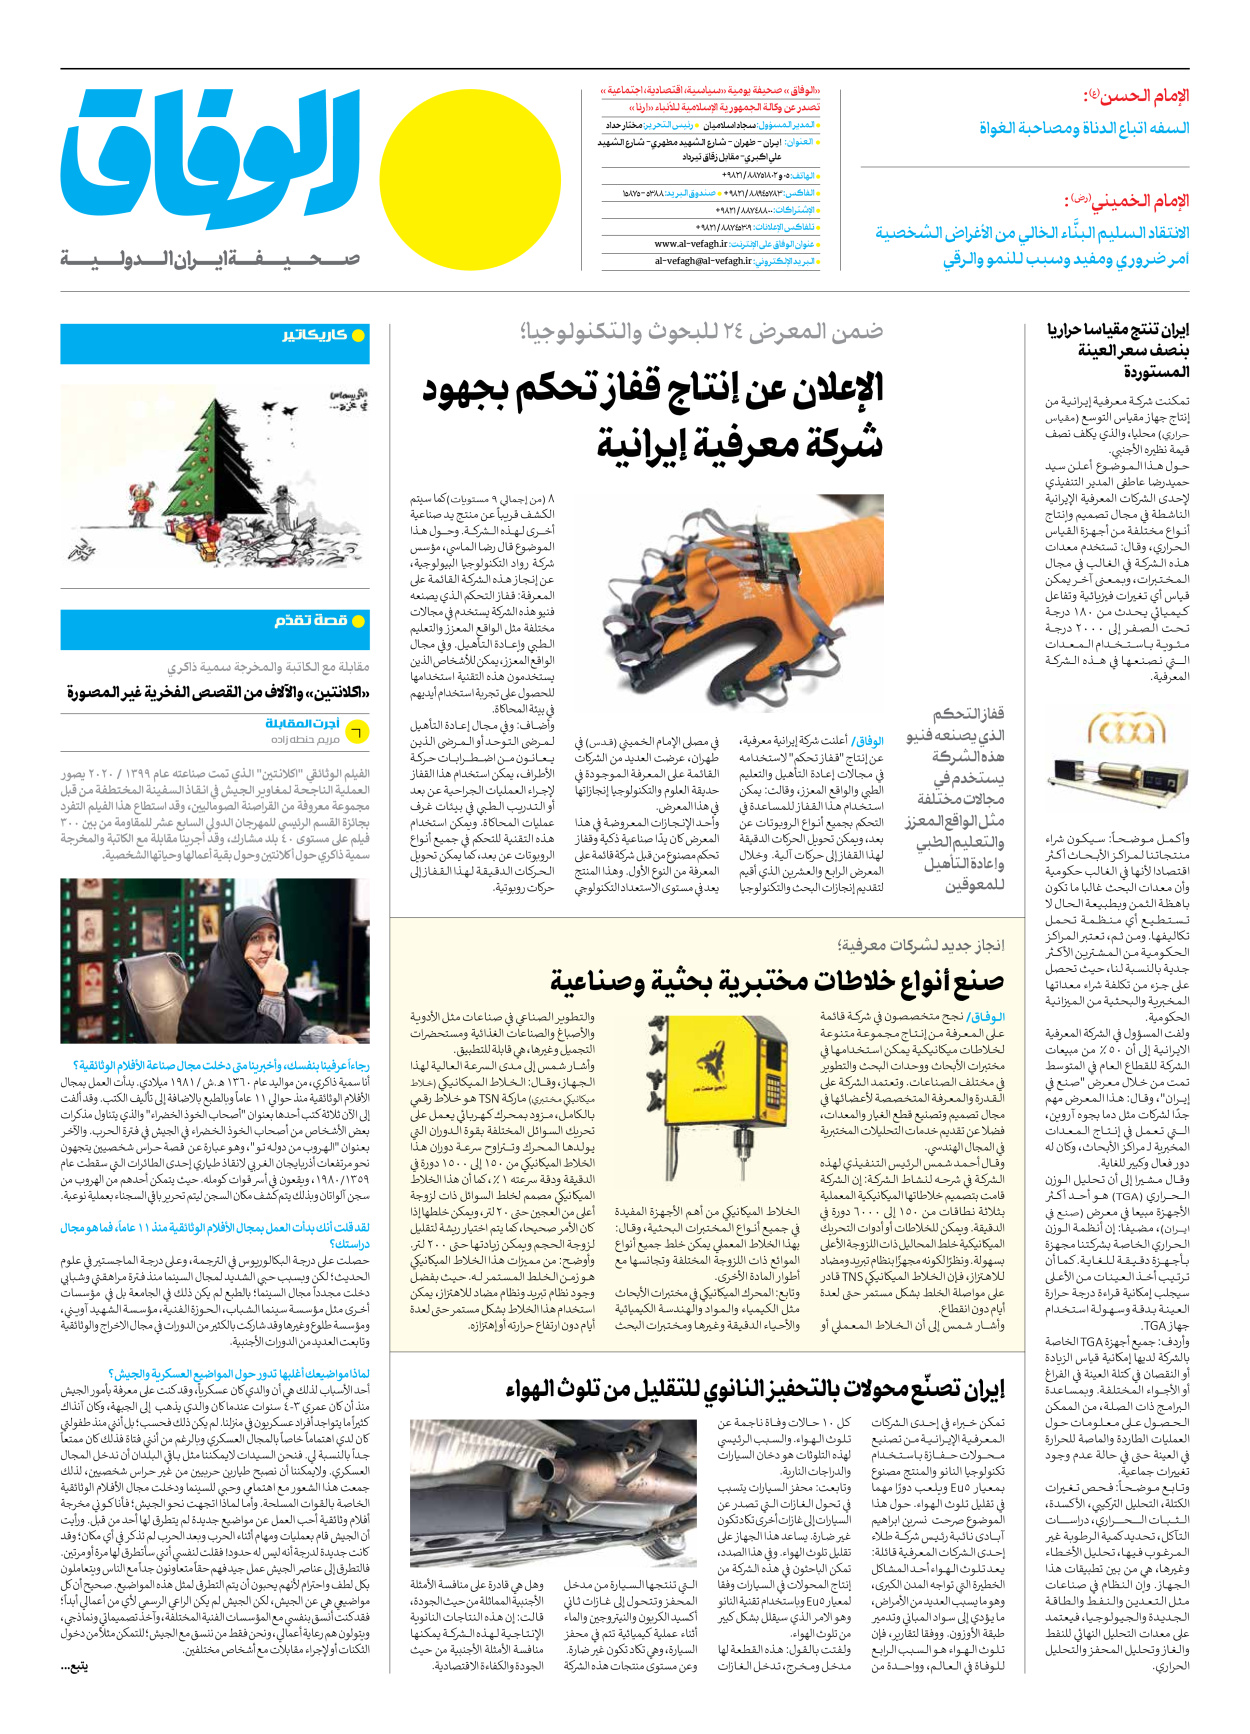 صحیفة ایران الدولیة الوفاق - العدد سبعة آلاف وأربعمائة وثمانية - ٢٤ ديسمبر ٢٠٢٣ - الصفحة ۸